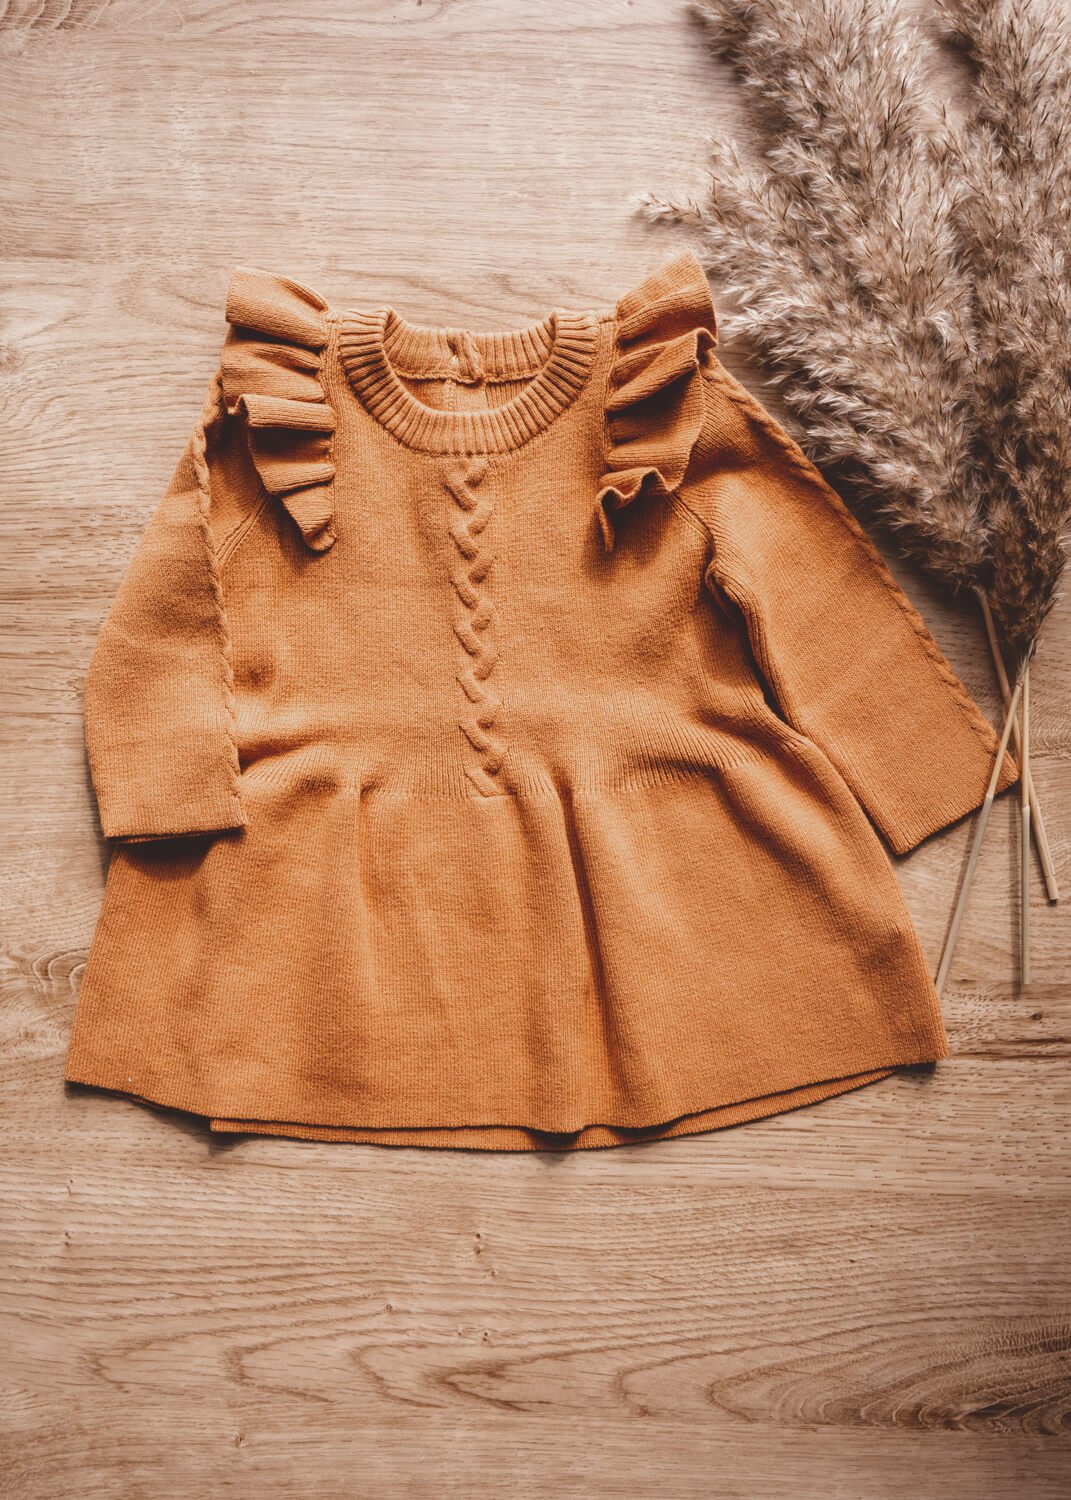 ETTA Knitted Dress - Copper - Rocco & The Fox